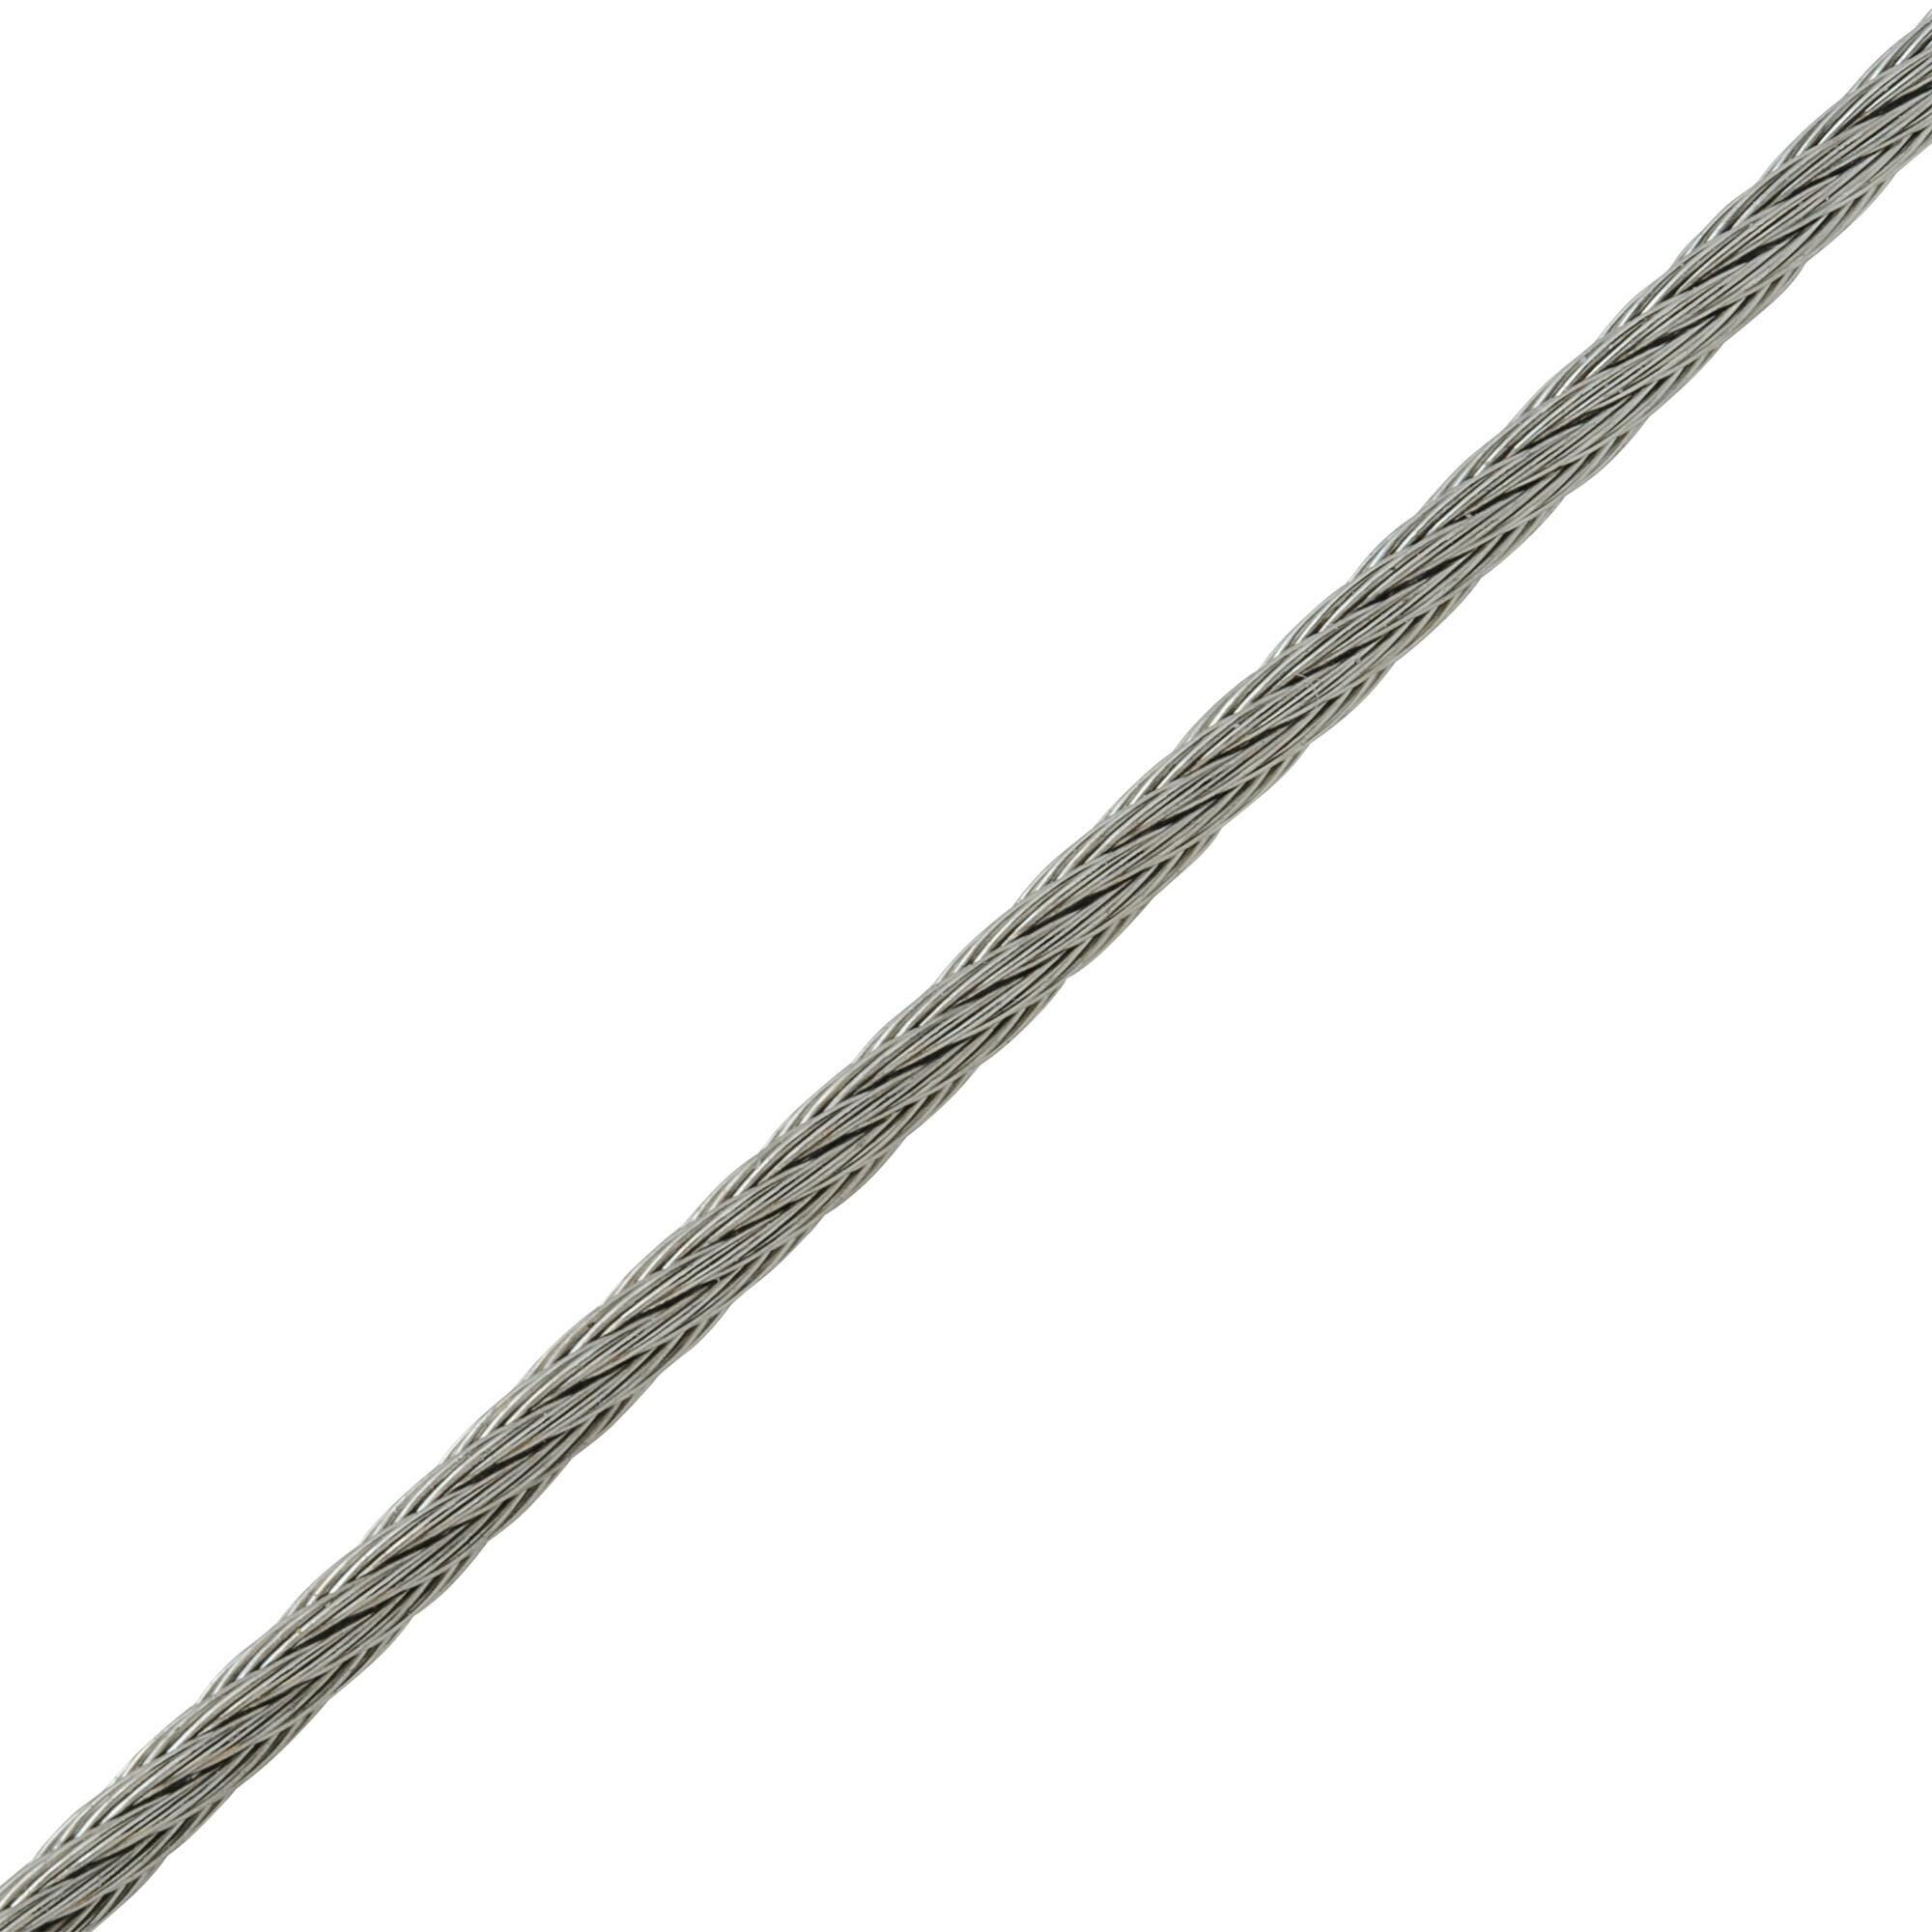 Cable de acero de 1.5mm de ø y 10 m de longitud